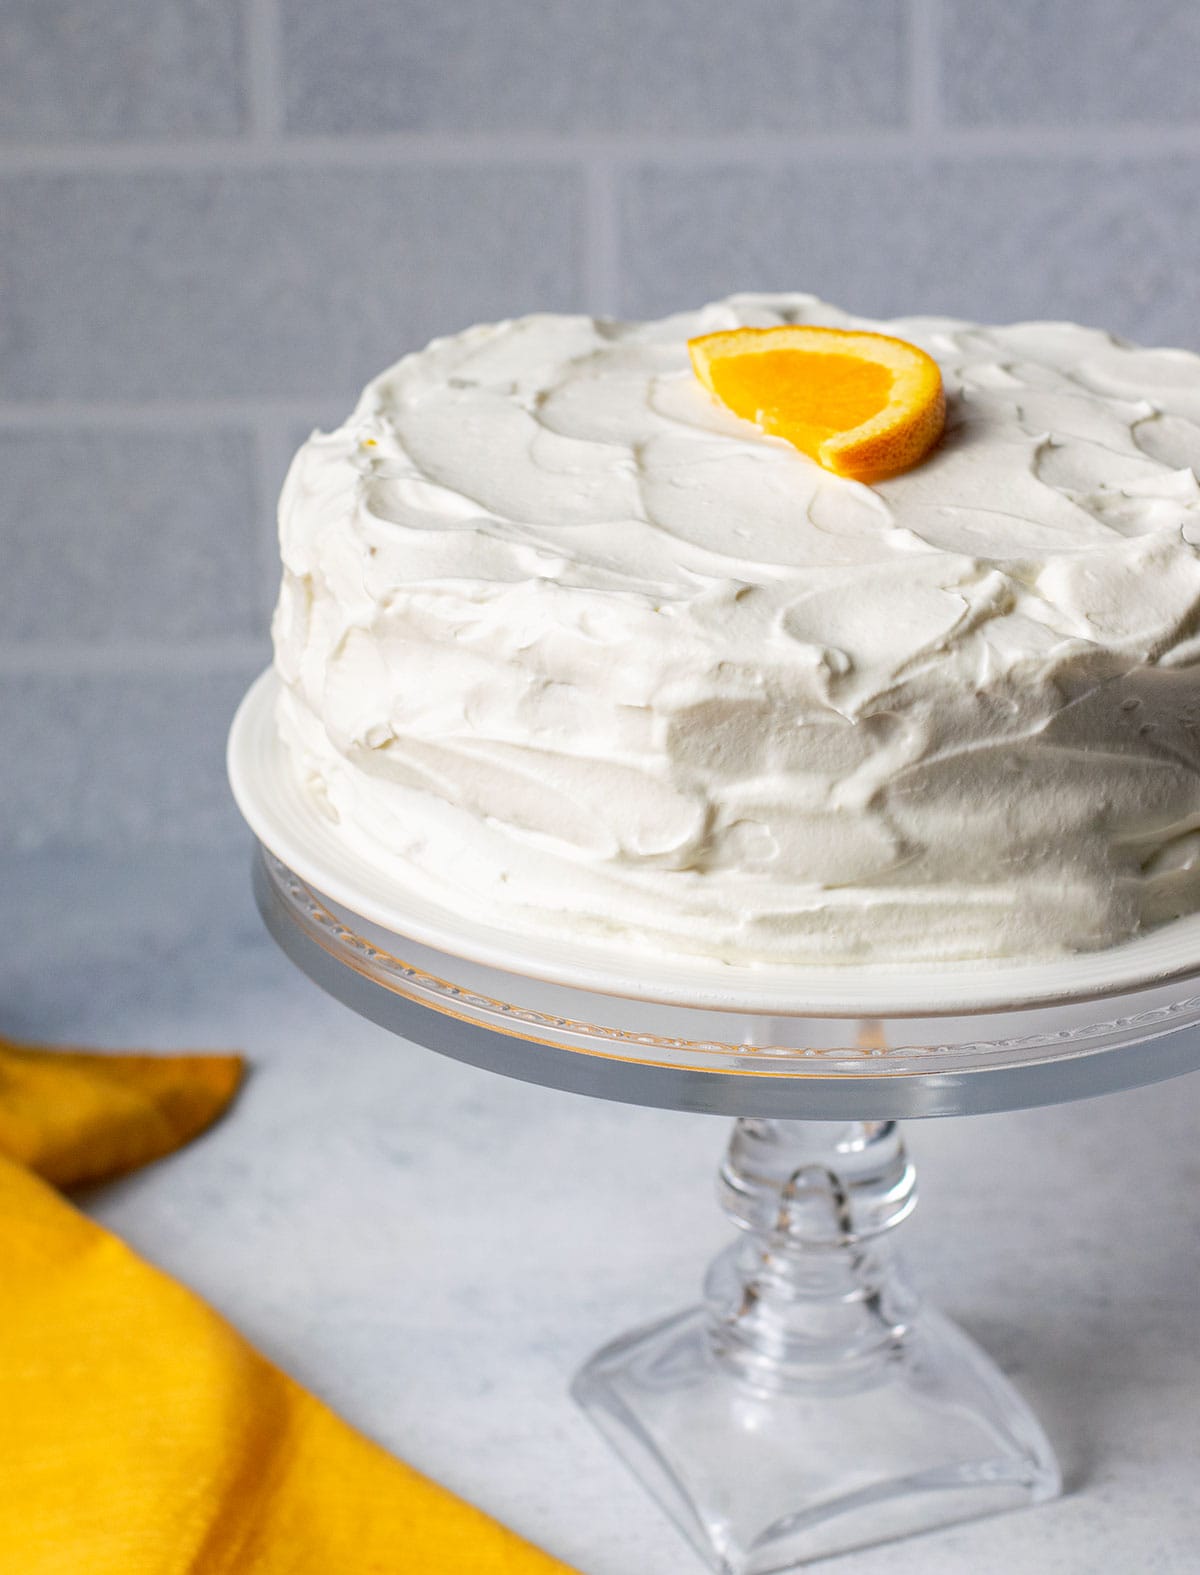 orange sponge cake with whipped cream on cake stand garnished with orange slice